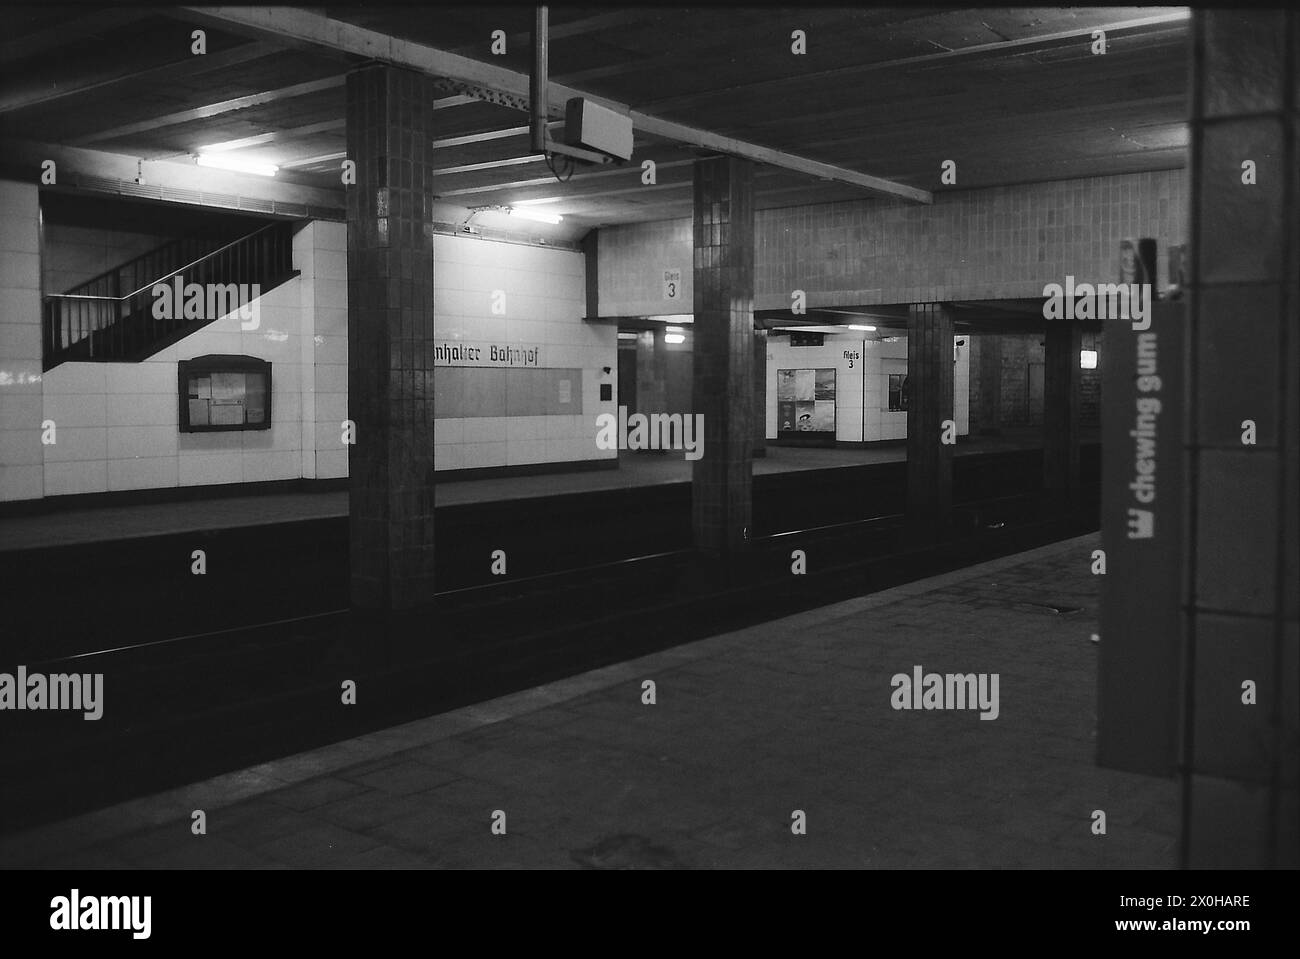 La stazione della metropolitana S-Bahn dell'Anhalter Bahnhof - la parte in superficie era già stata demolita, fatta eccezione per una sezione del muro del portico - fa una vista desolata, solo piccole aree avevano ancora le vecchie piastrelle sul muro nel 1980. [traduzione automatizzata] Foto Stock